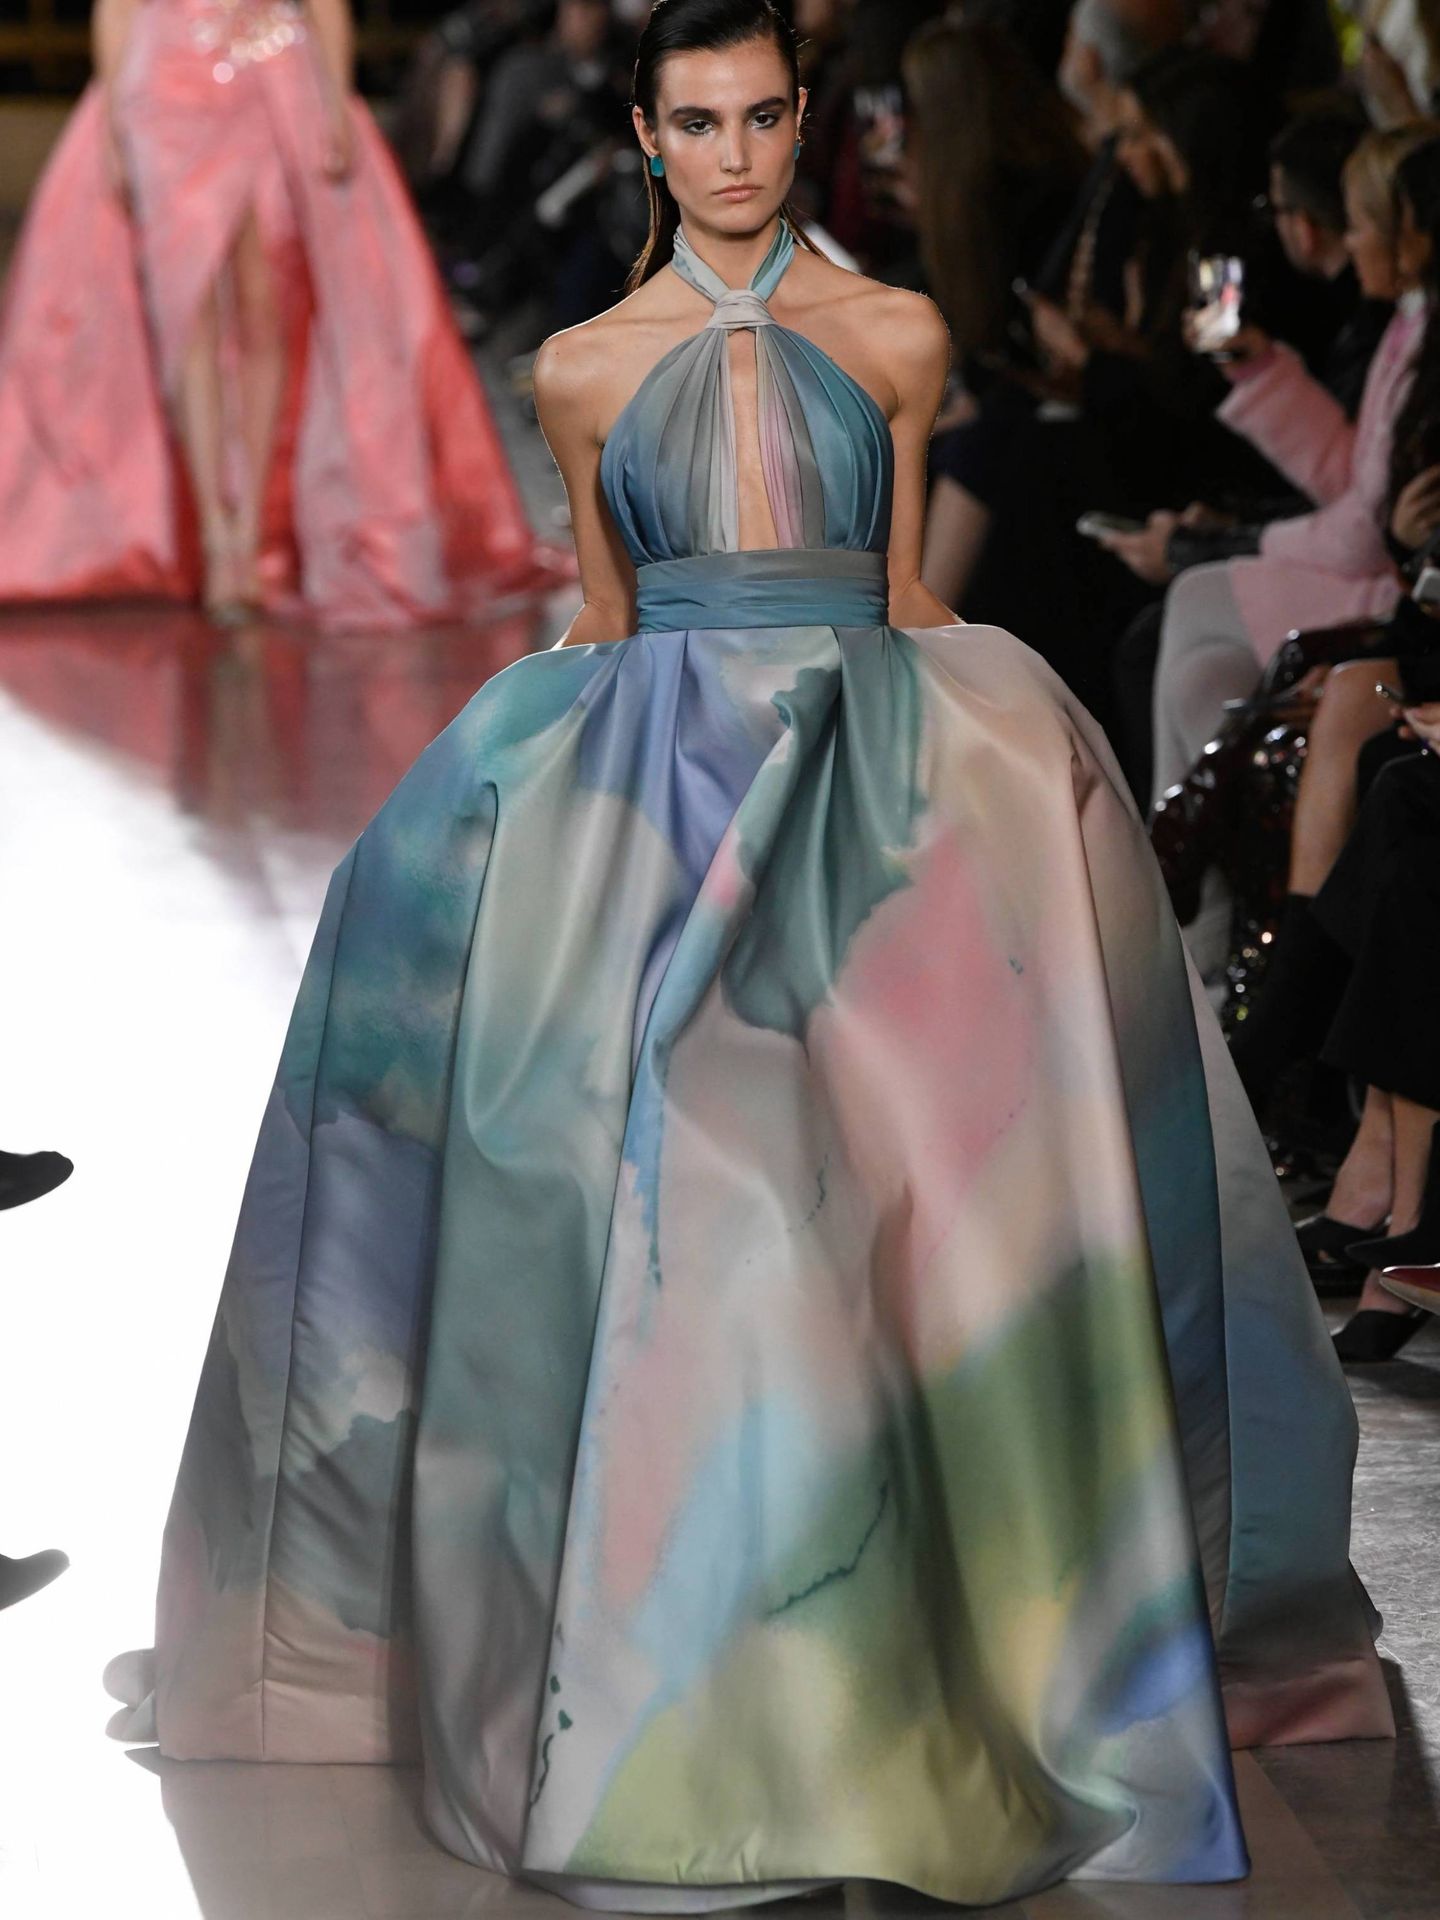 El vestido lucido por Victoria Iglesias, presentado en la pasarela de París en el mes de enero. (Cordon Press)